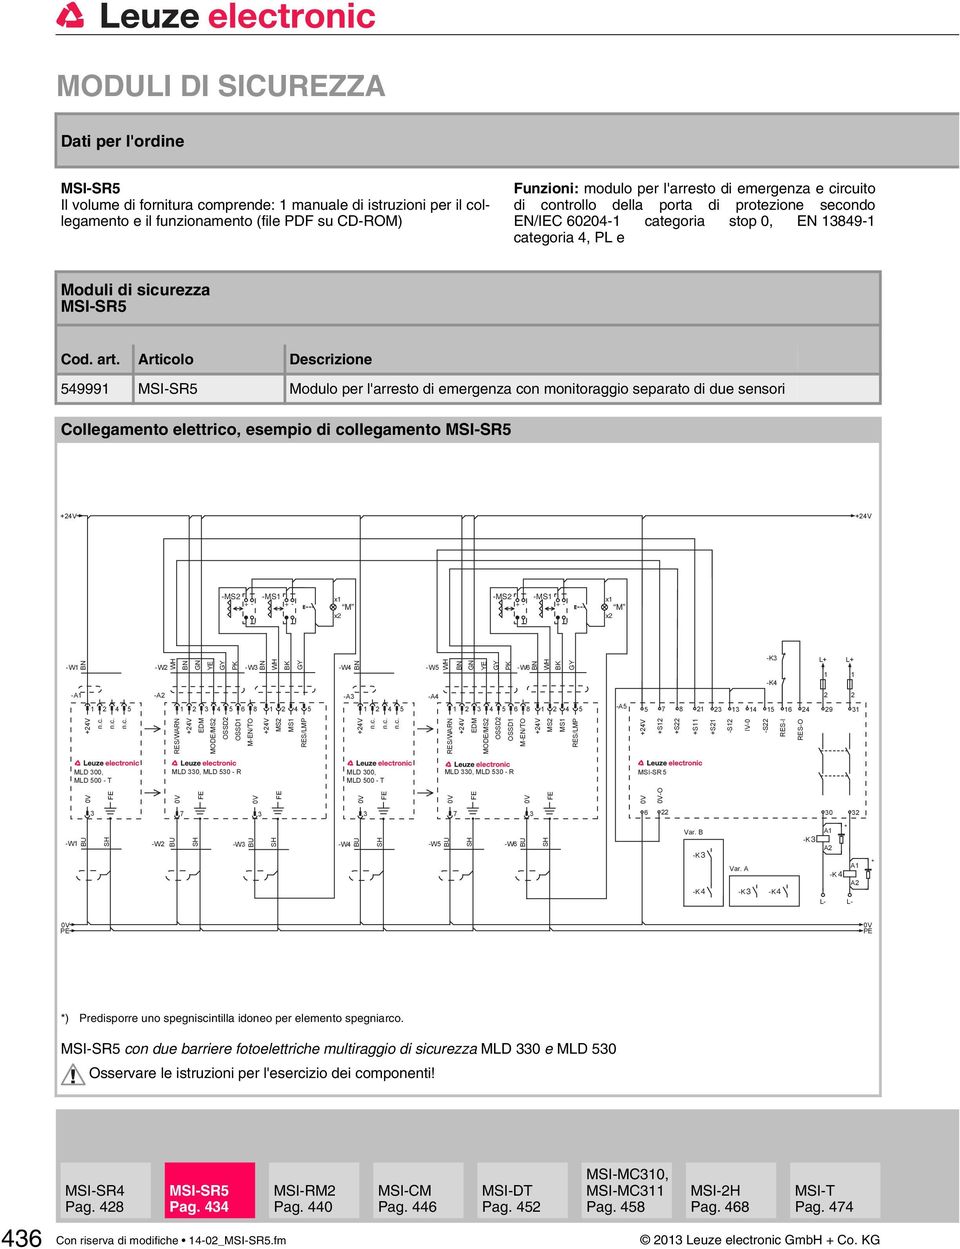 Articolo Descrizione 54999 MSI-SR5 Modulo per l'arresto di emergenza con monitoraggio separato di due sensori Collegamento elettrico, esempio di collegamento MSI-SR5 -MS +- -MS +- x M x -MS +- -MS +-